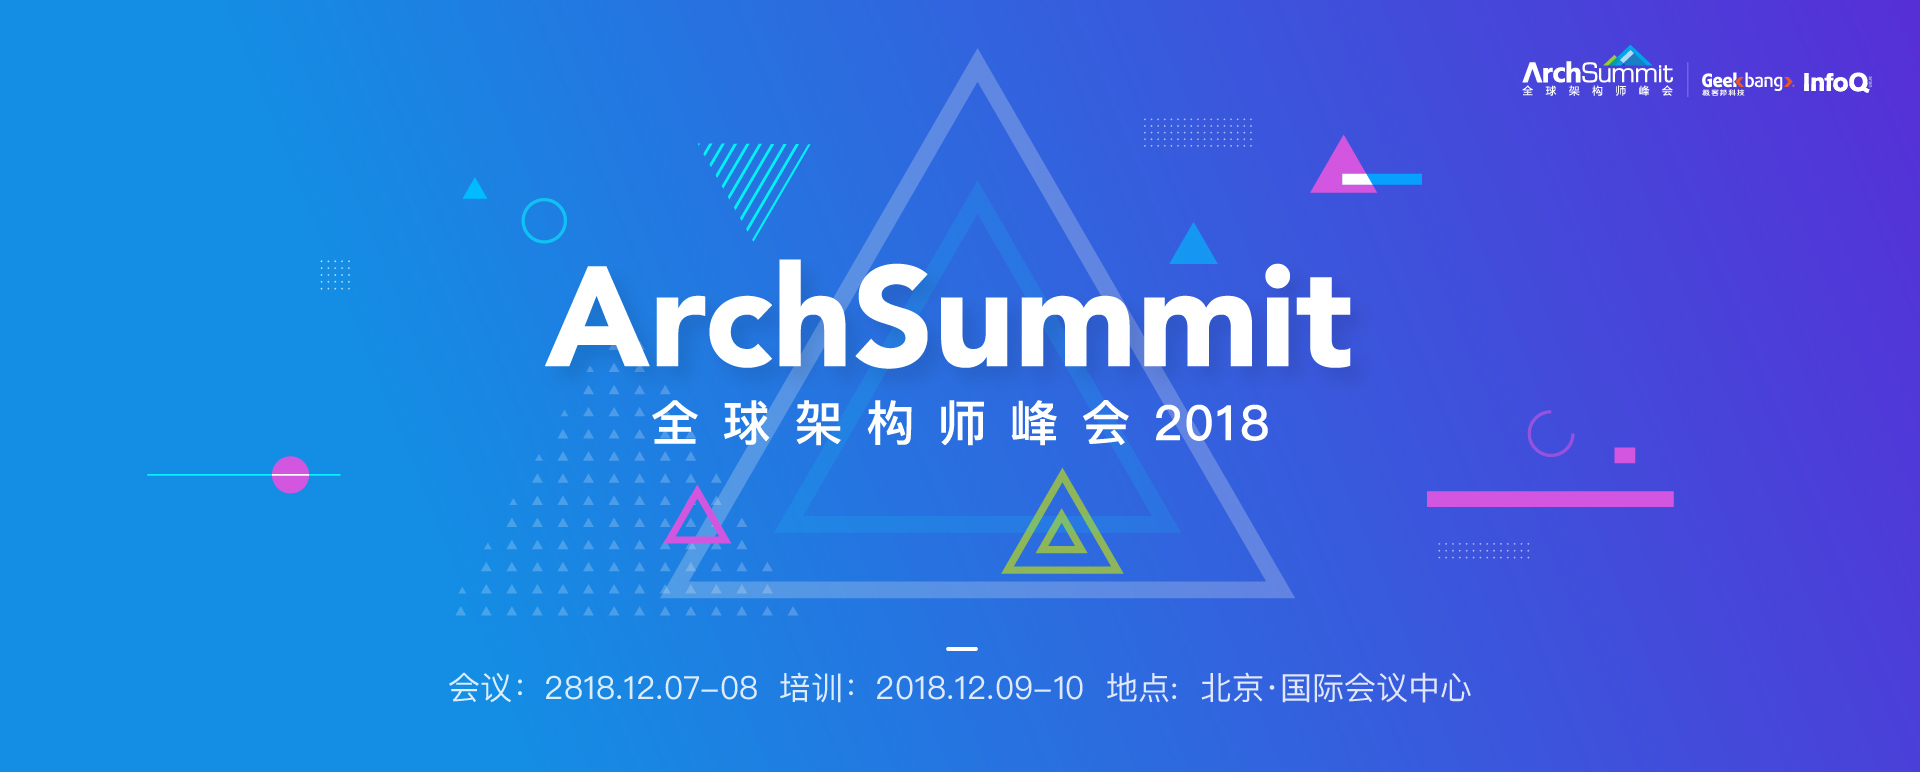 2018北京ArchSummit回顾